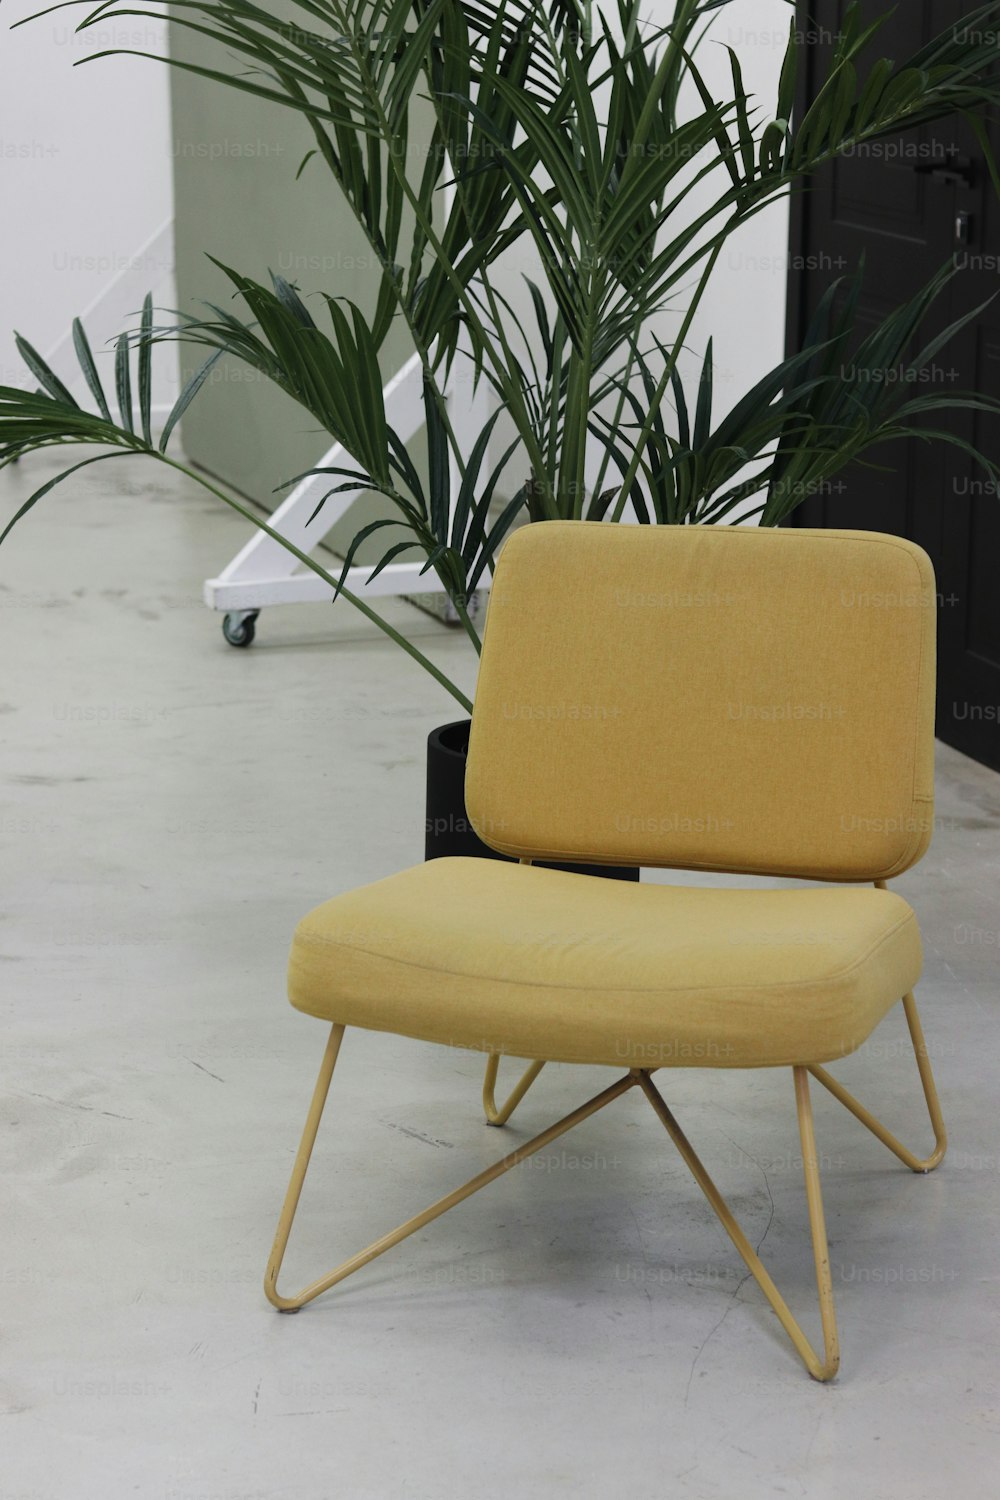 Ein gelber Stuhl vor einer Pflanze